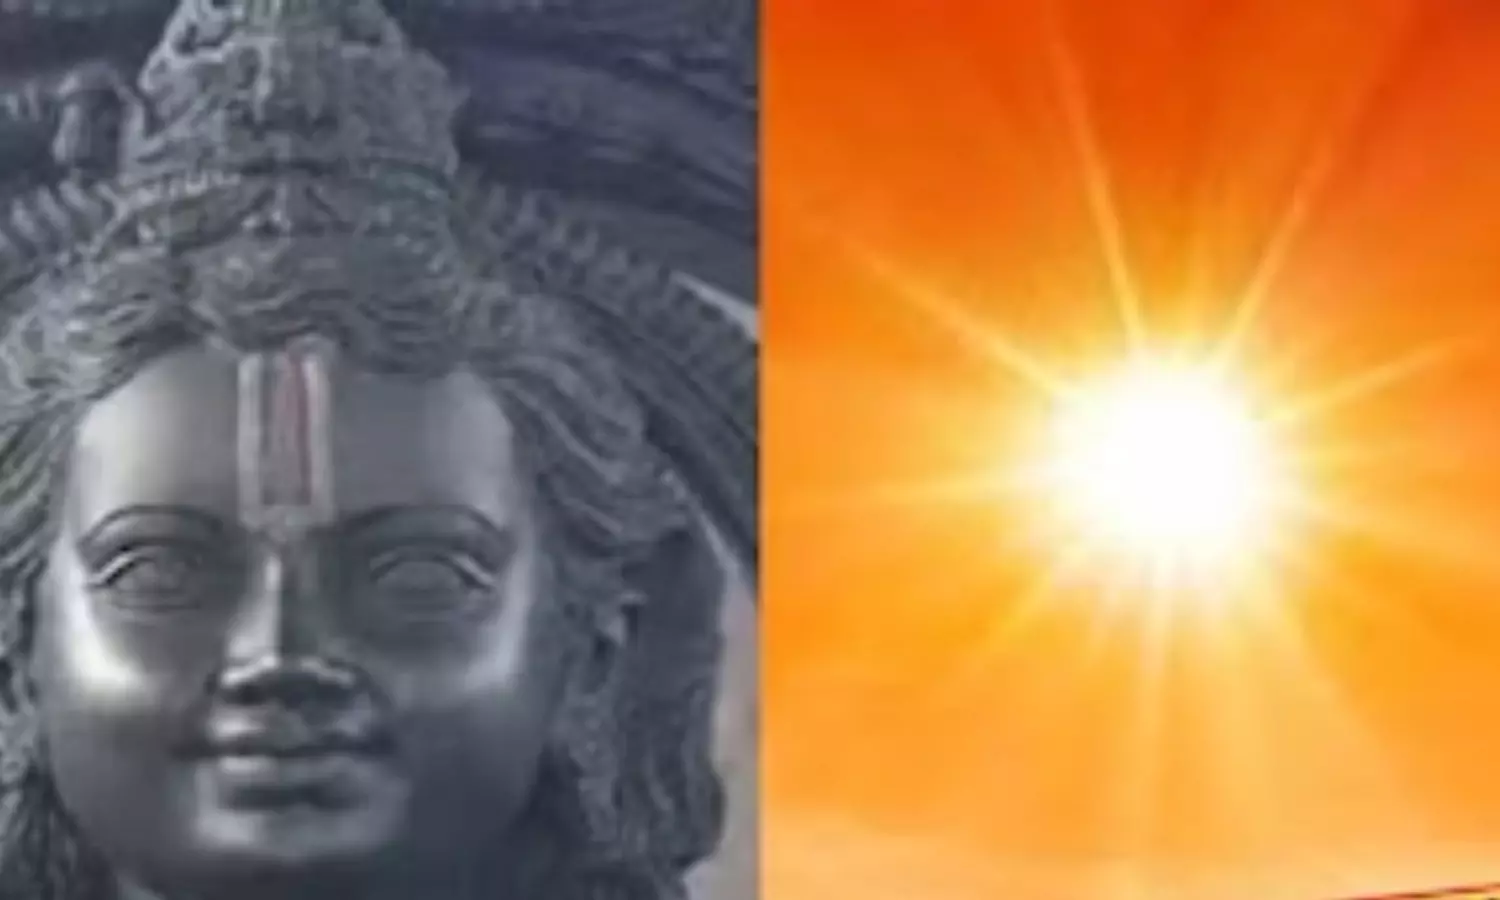 Ram Mandir : हर राम नवमी पर, भगवान रामलला के माथे पर  सजेगा सूर्य तिलक, सूर्य की किरणों चमक उठेगी प्रतिमा